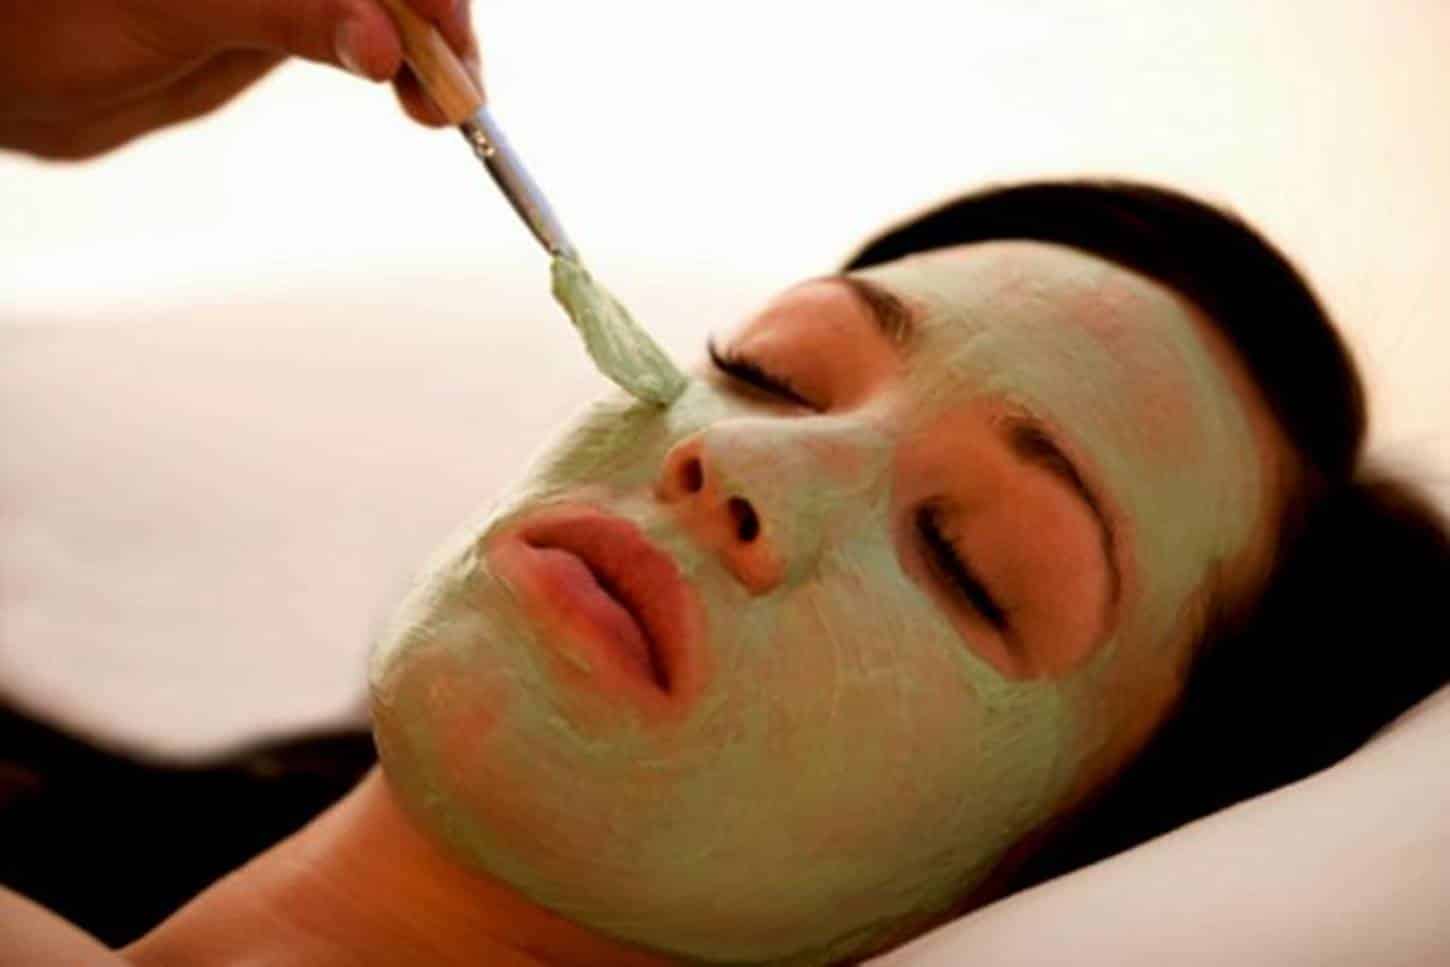 Máscara de alface: método natural para remover rugas e manchas da pele